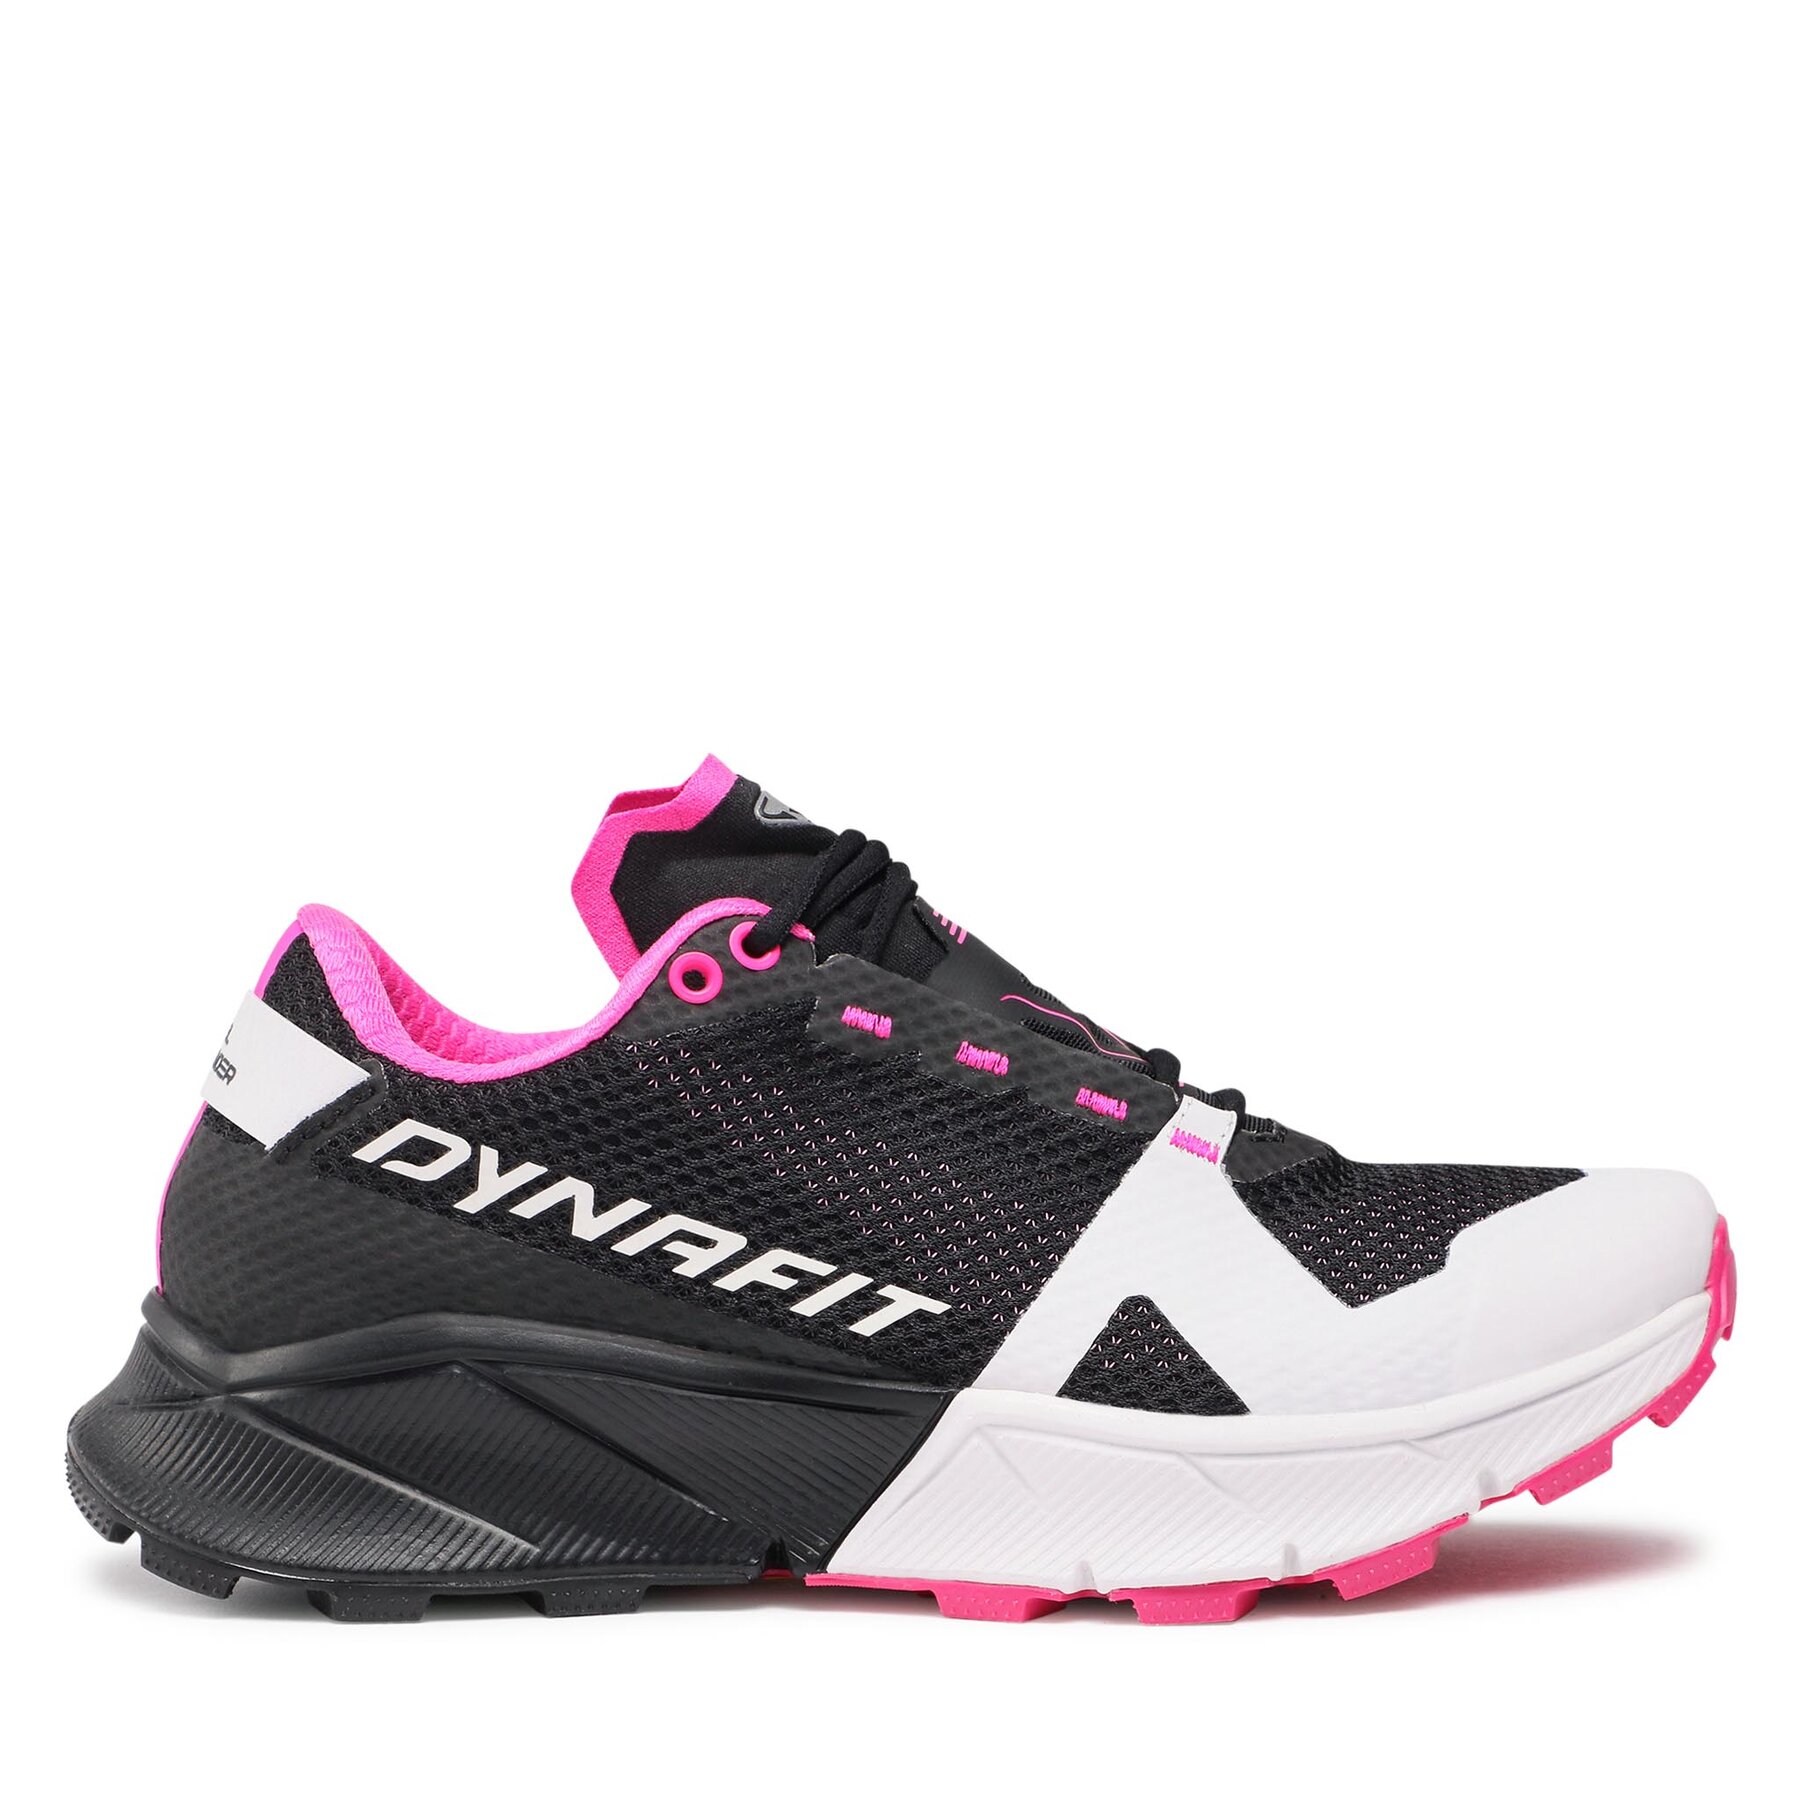 Schuhe Dynafit Ultra 100 W 4635 4635 von Dynafit